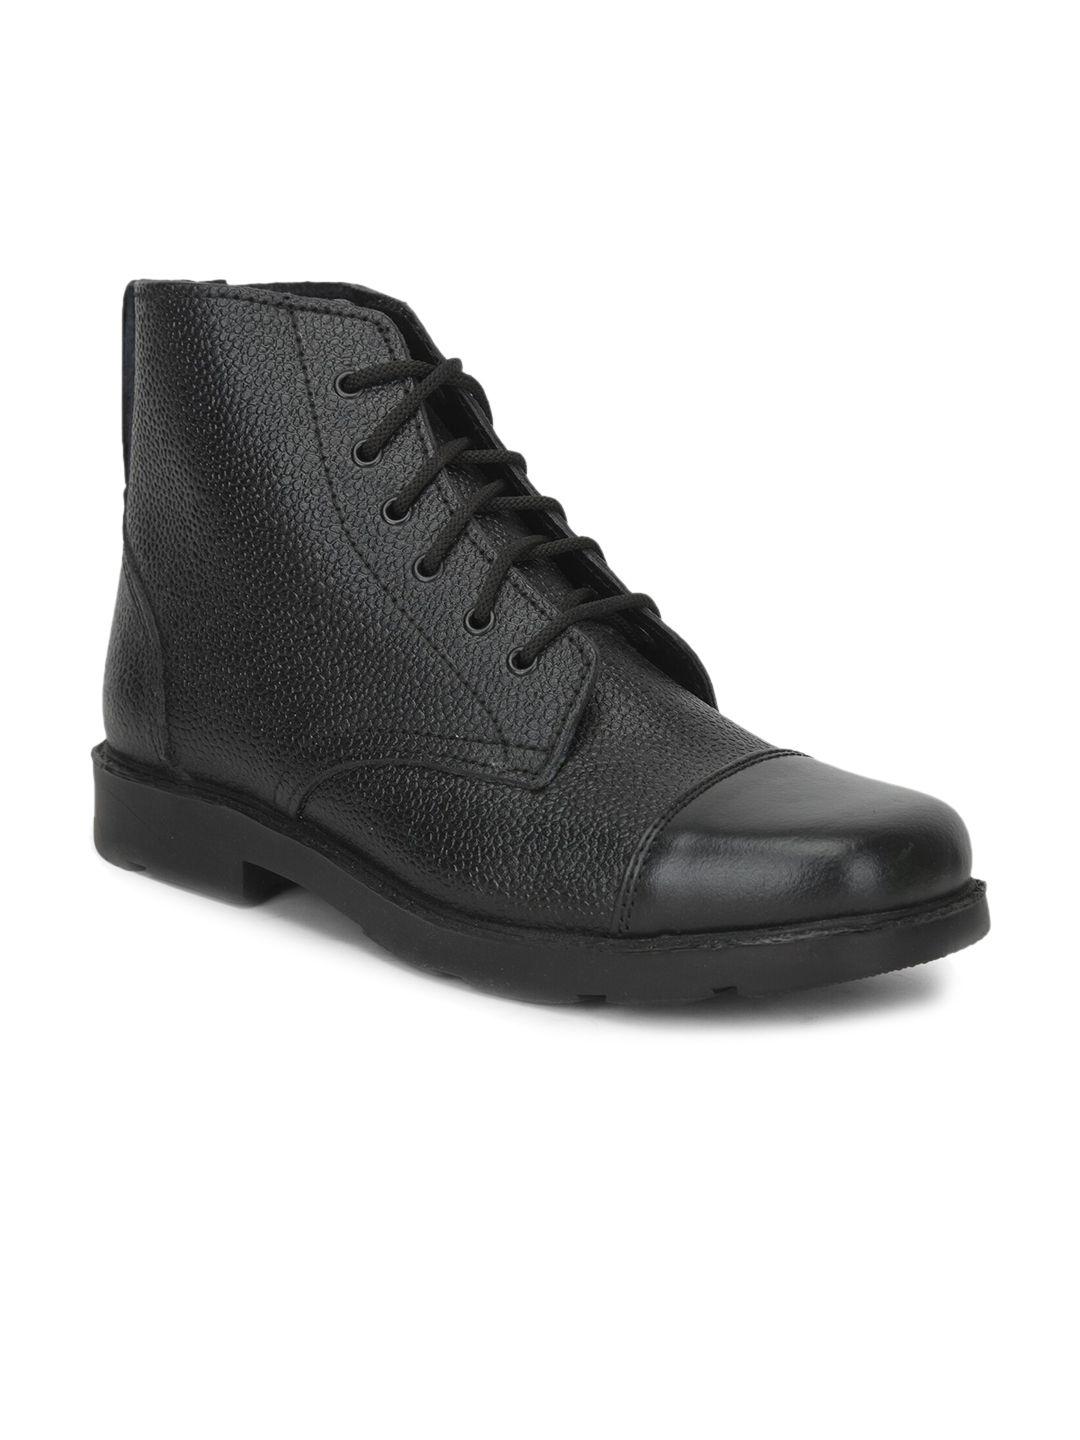 liberty-men-black-solid-formal-boots